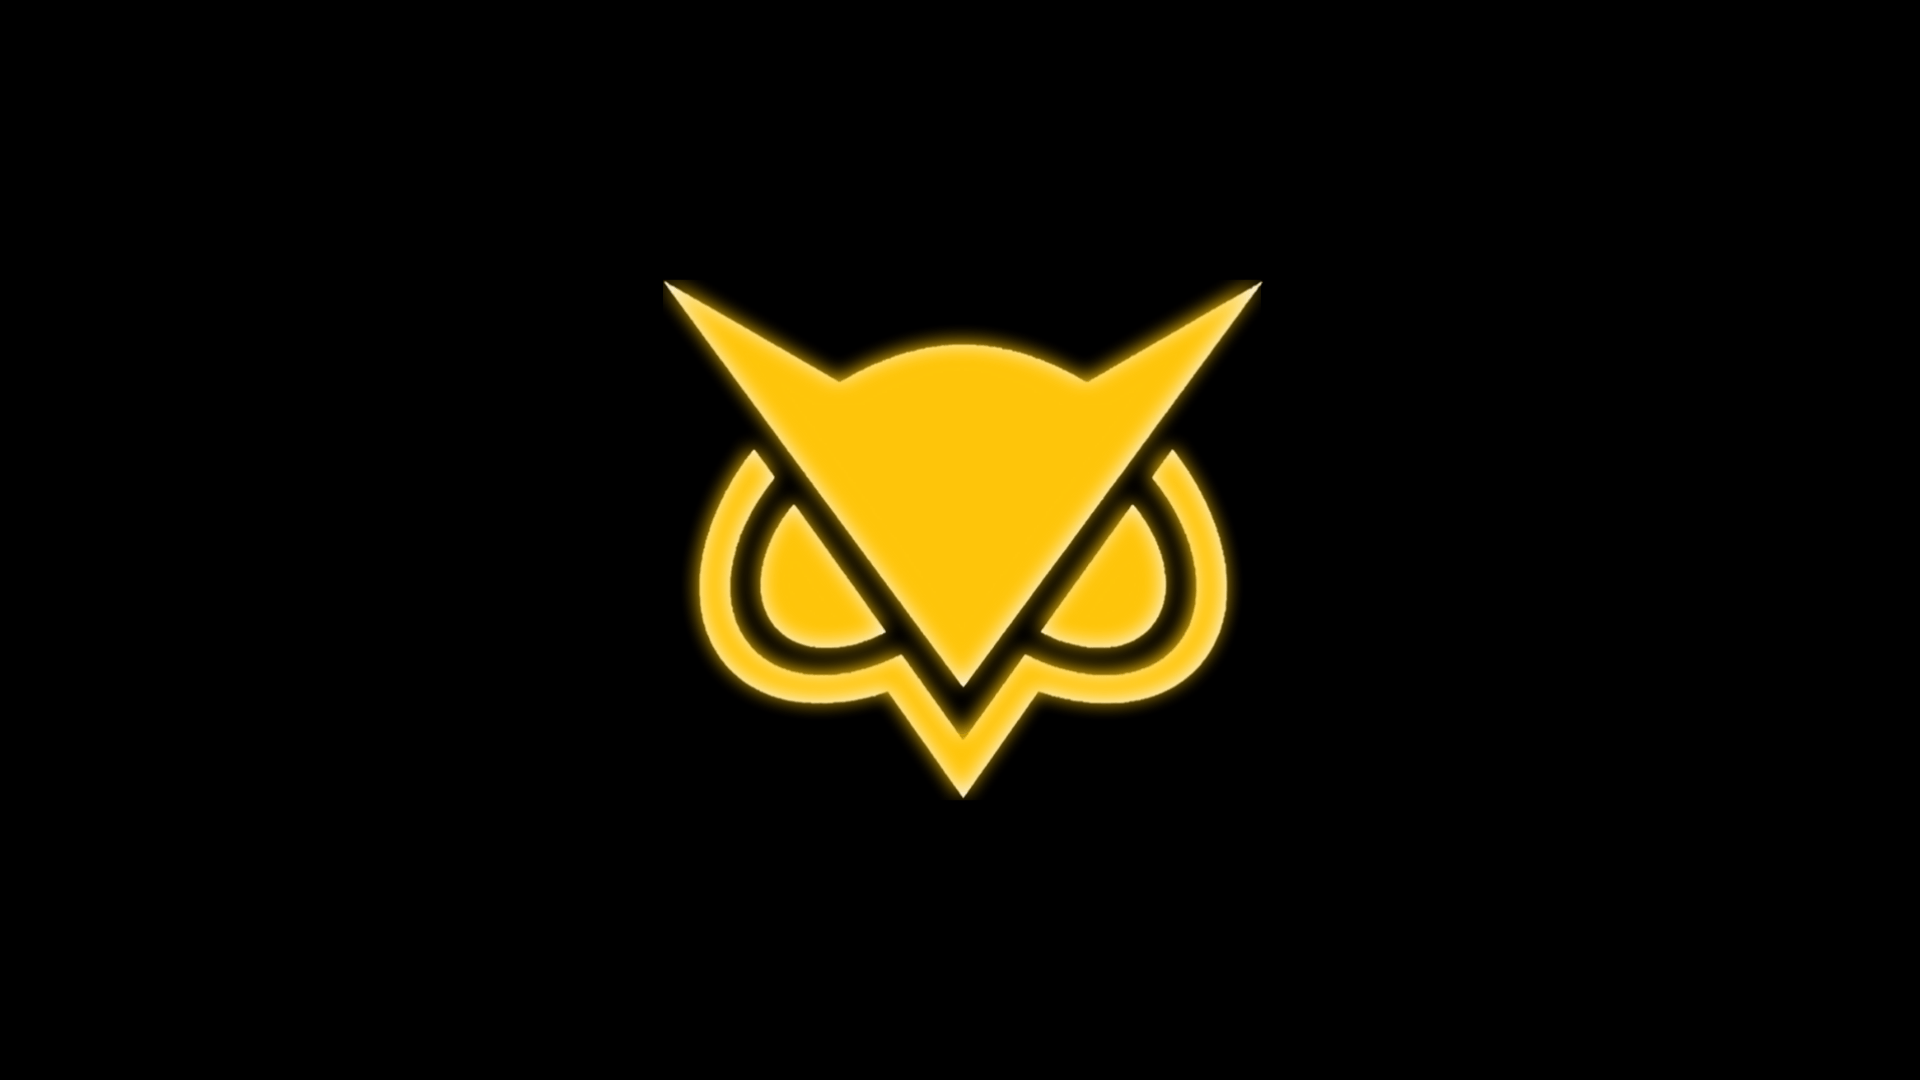 Vanoss Owl Golden Glow Wallpaper HD